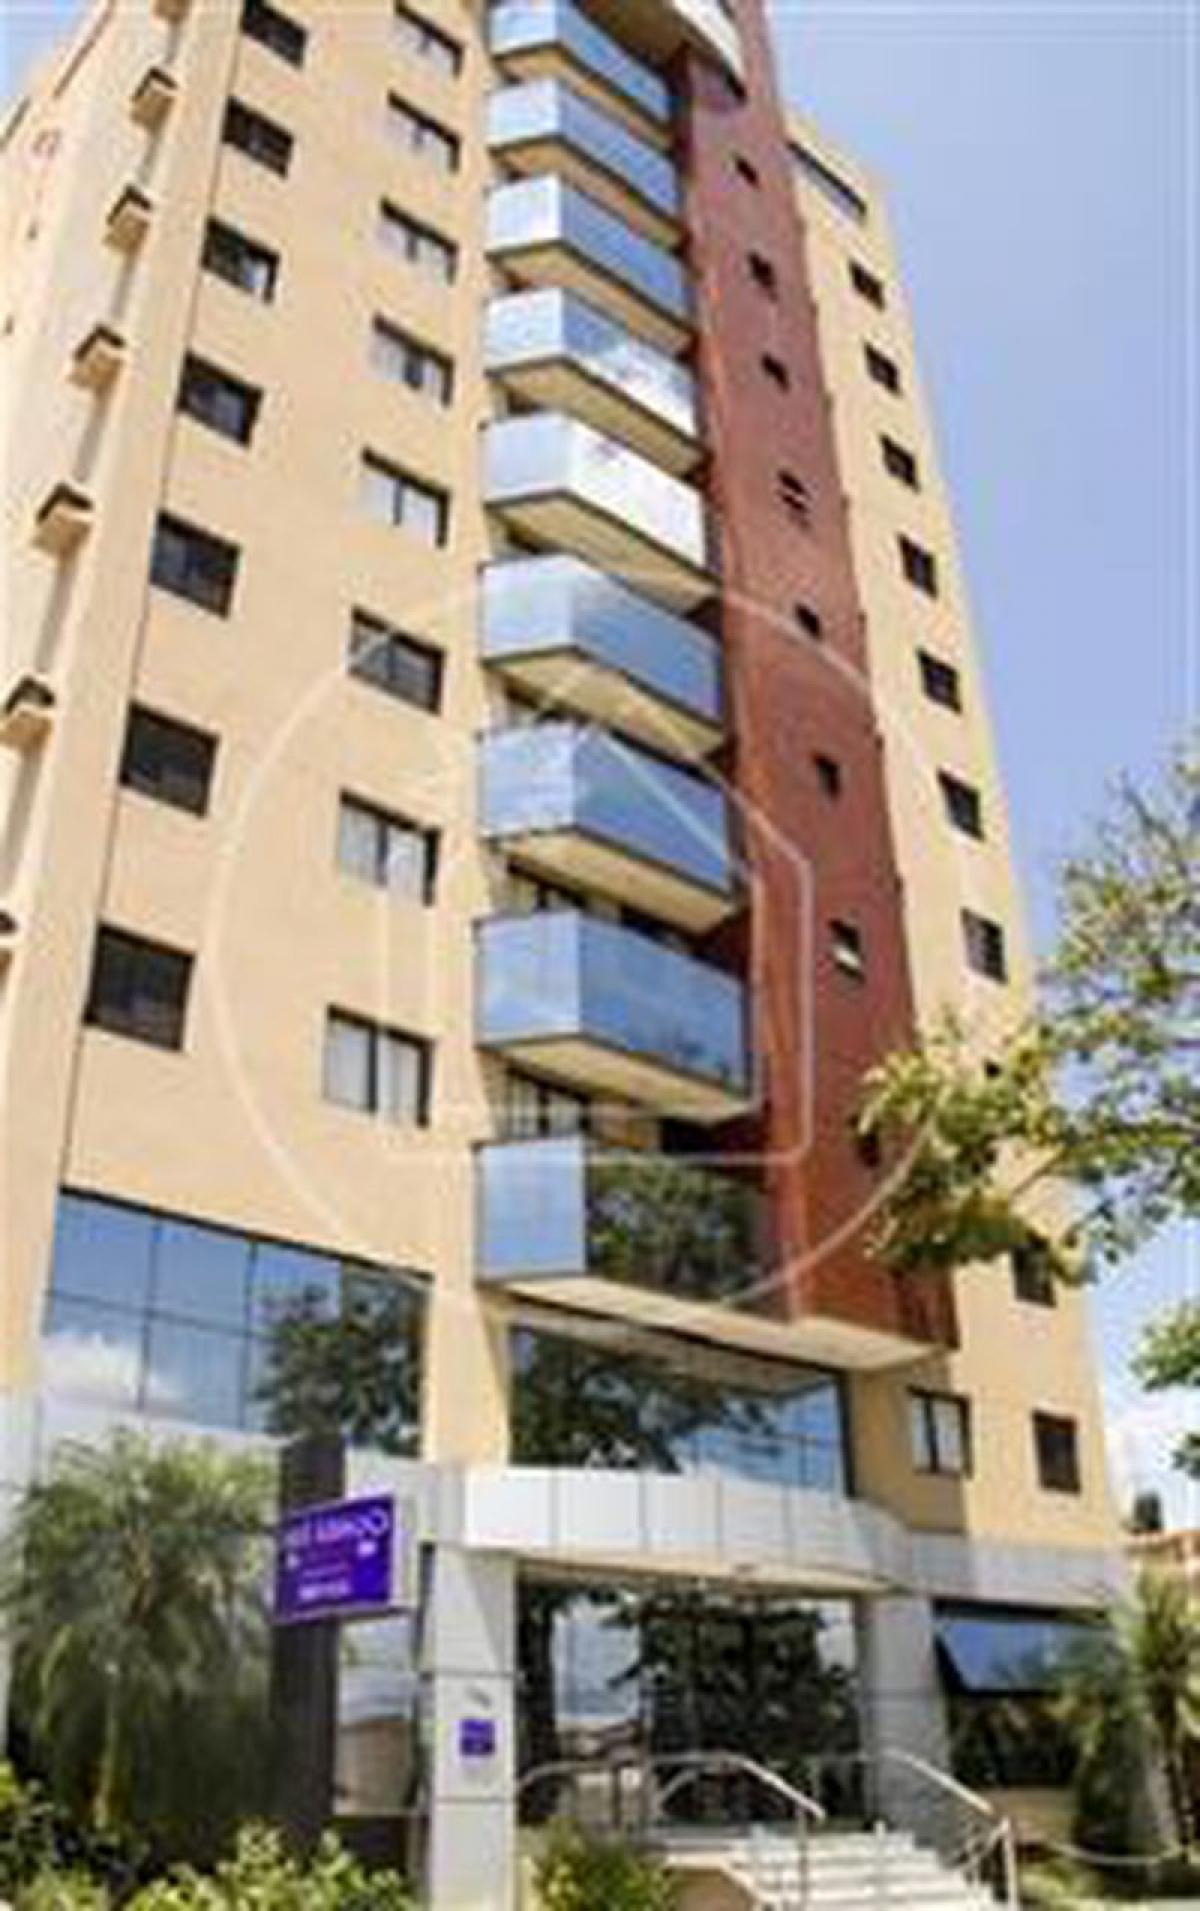 Picture of Apartment For Sale in Guaratingueta, Sao Paulo, Brazil